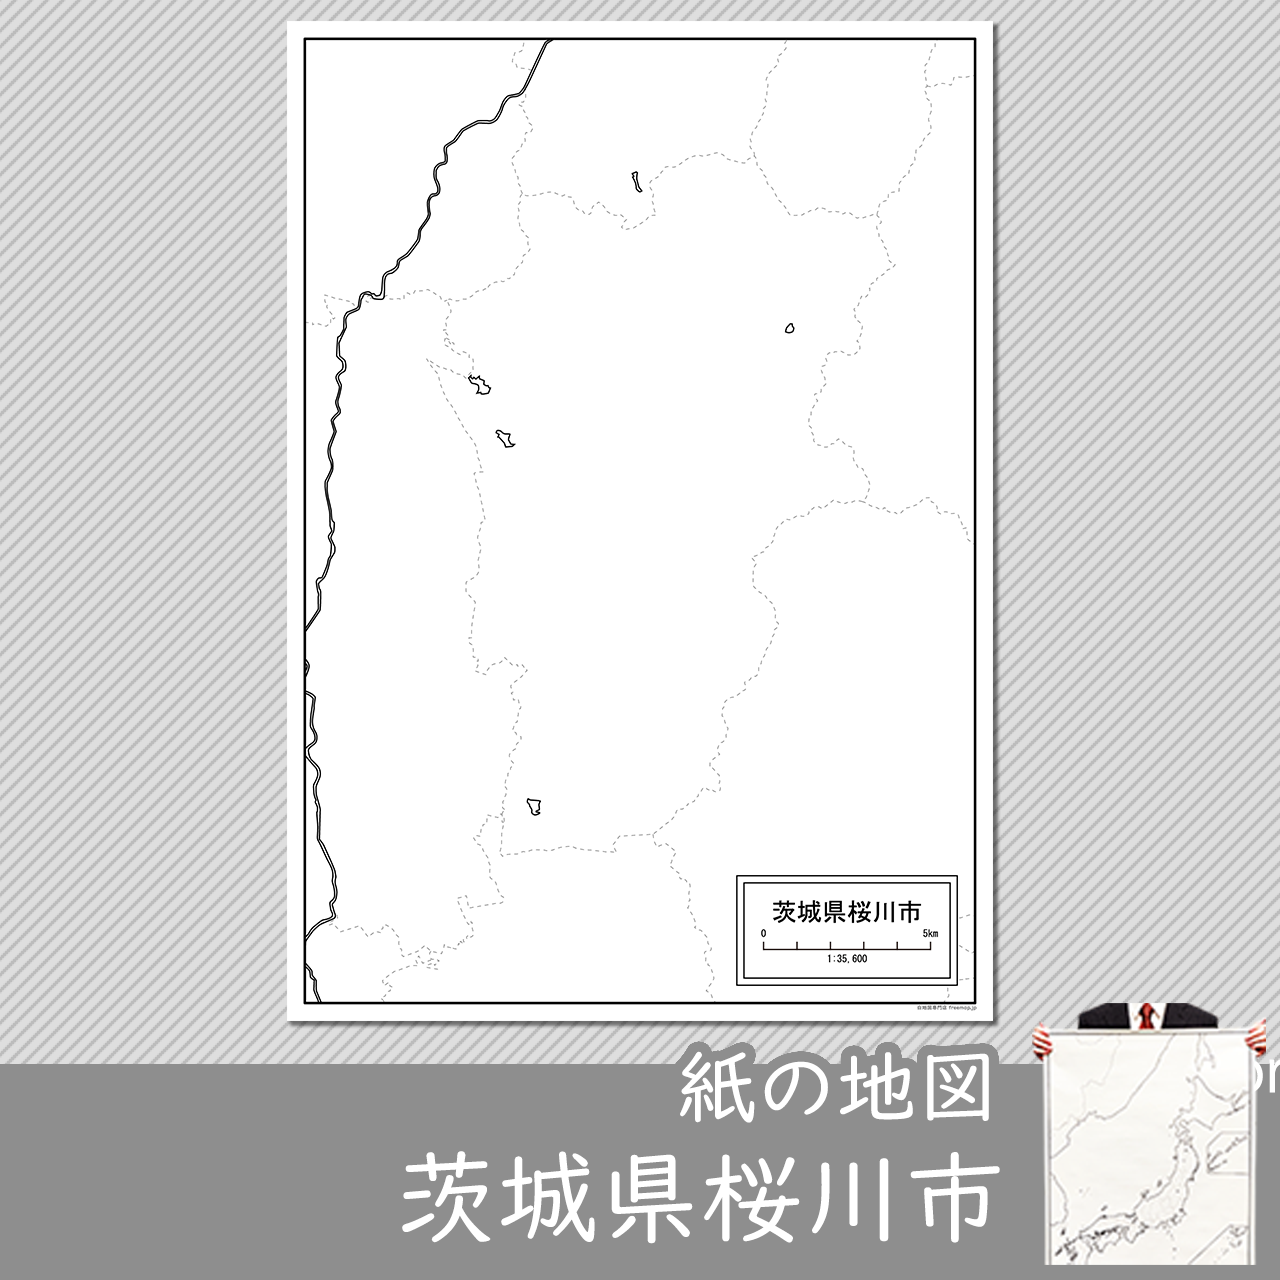 桜川市の紙の白地図のサムネイル